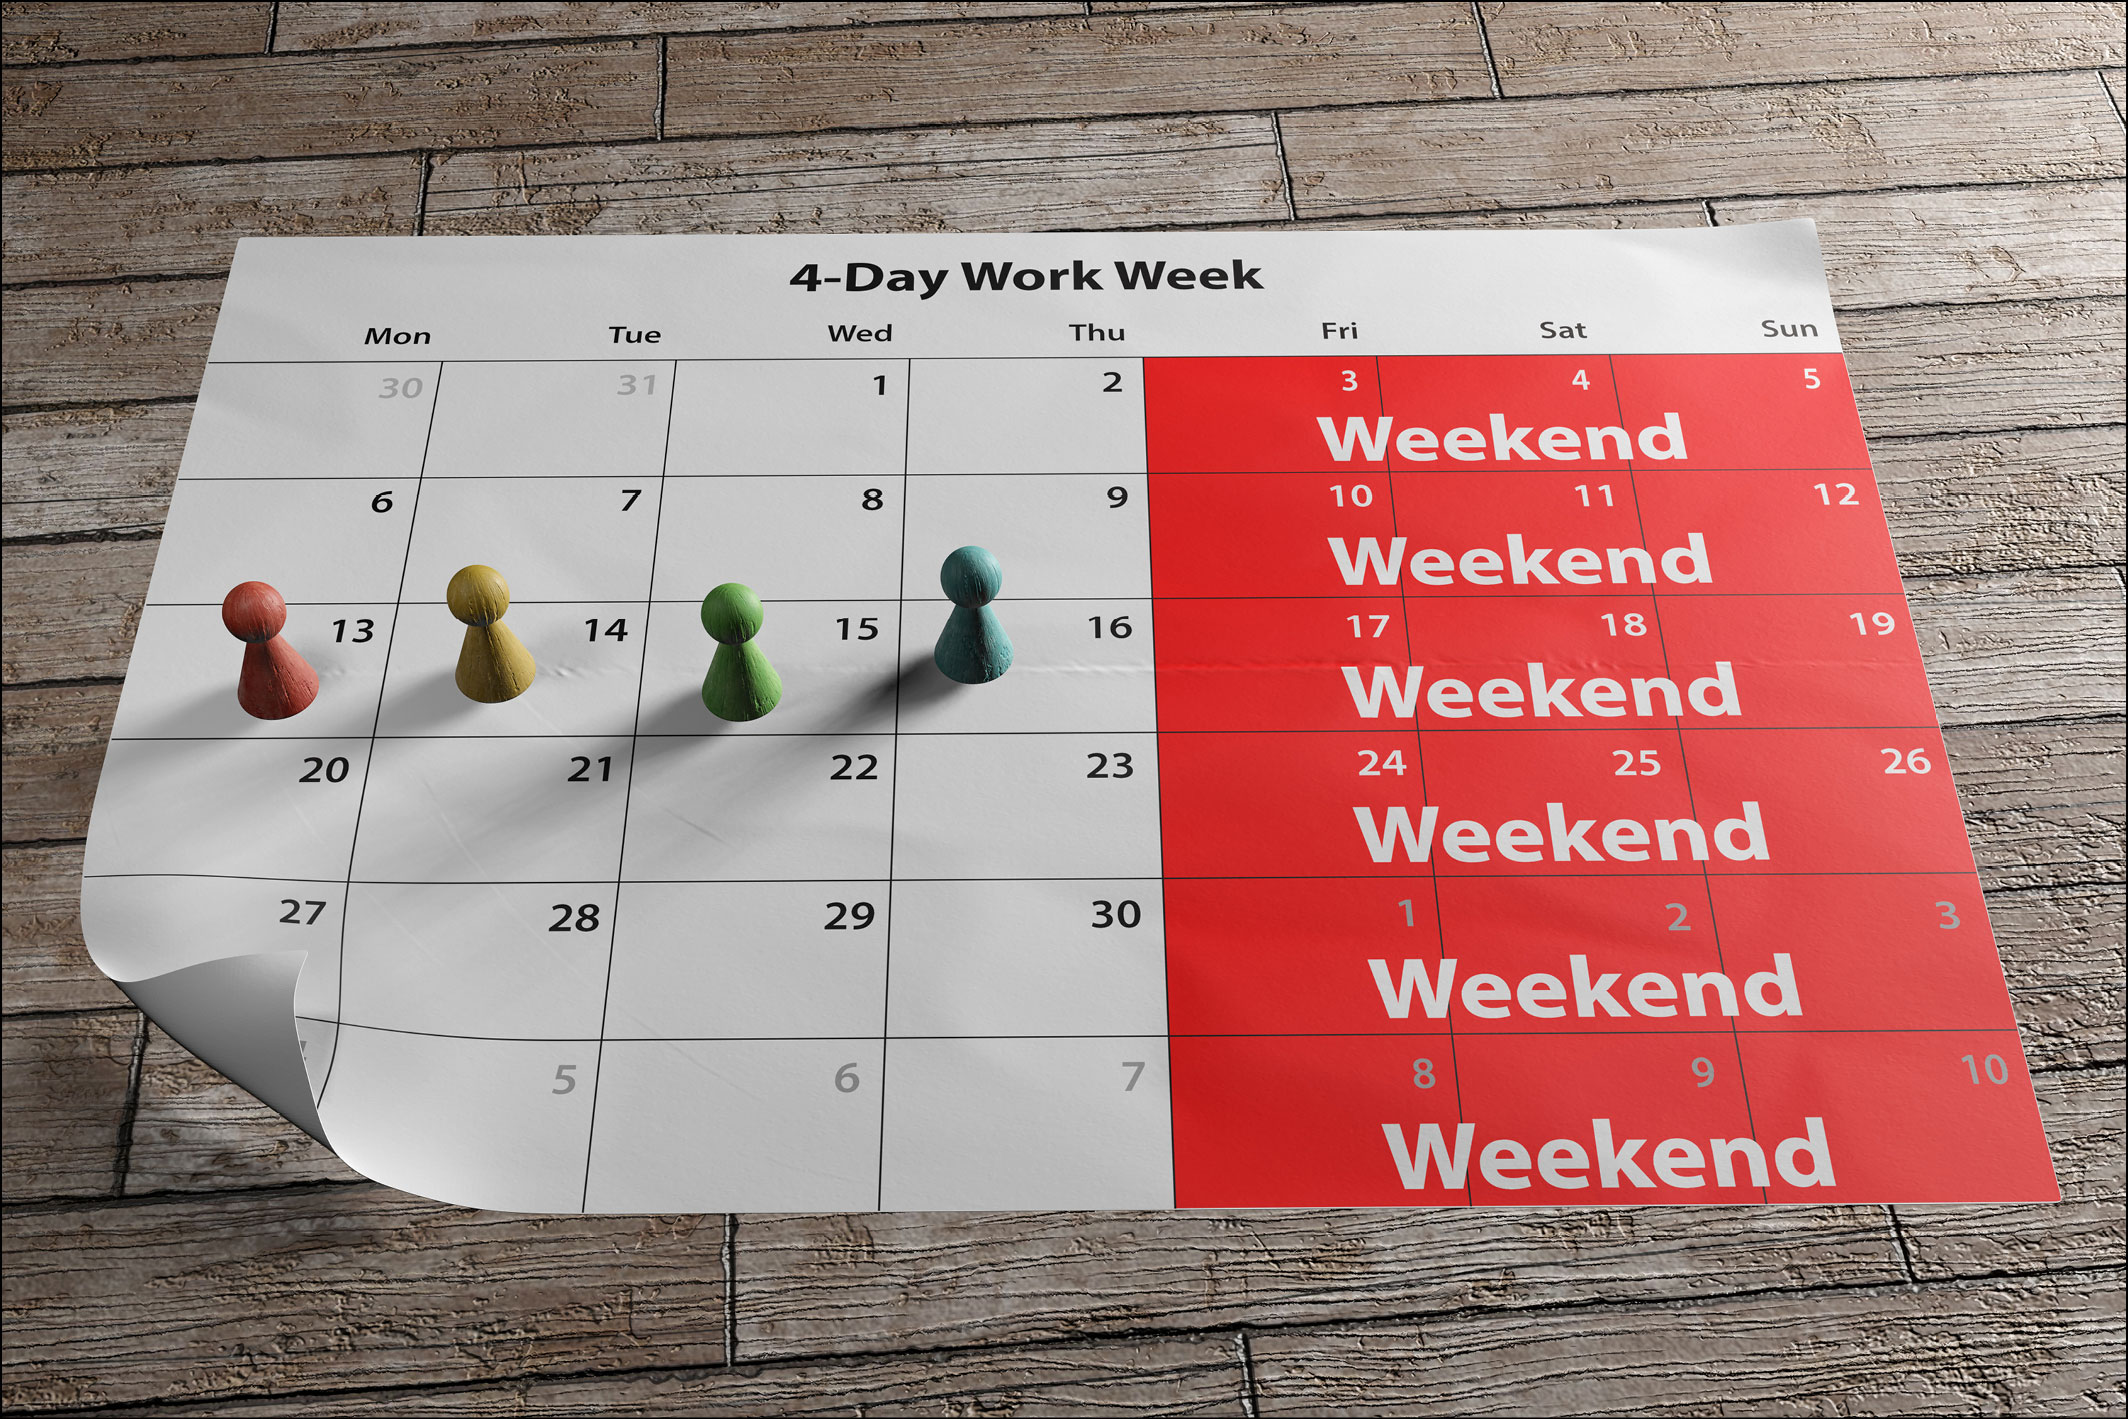 Hier sieht man einen Kalender, auf dem eine 4-Tage-Woche markiert ist. 